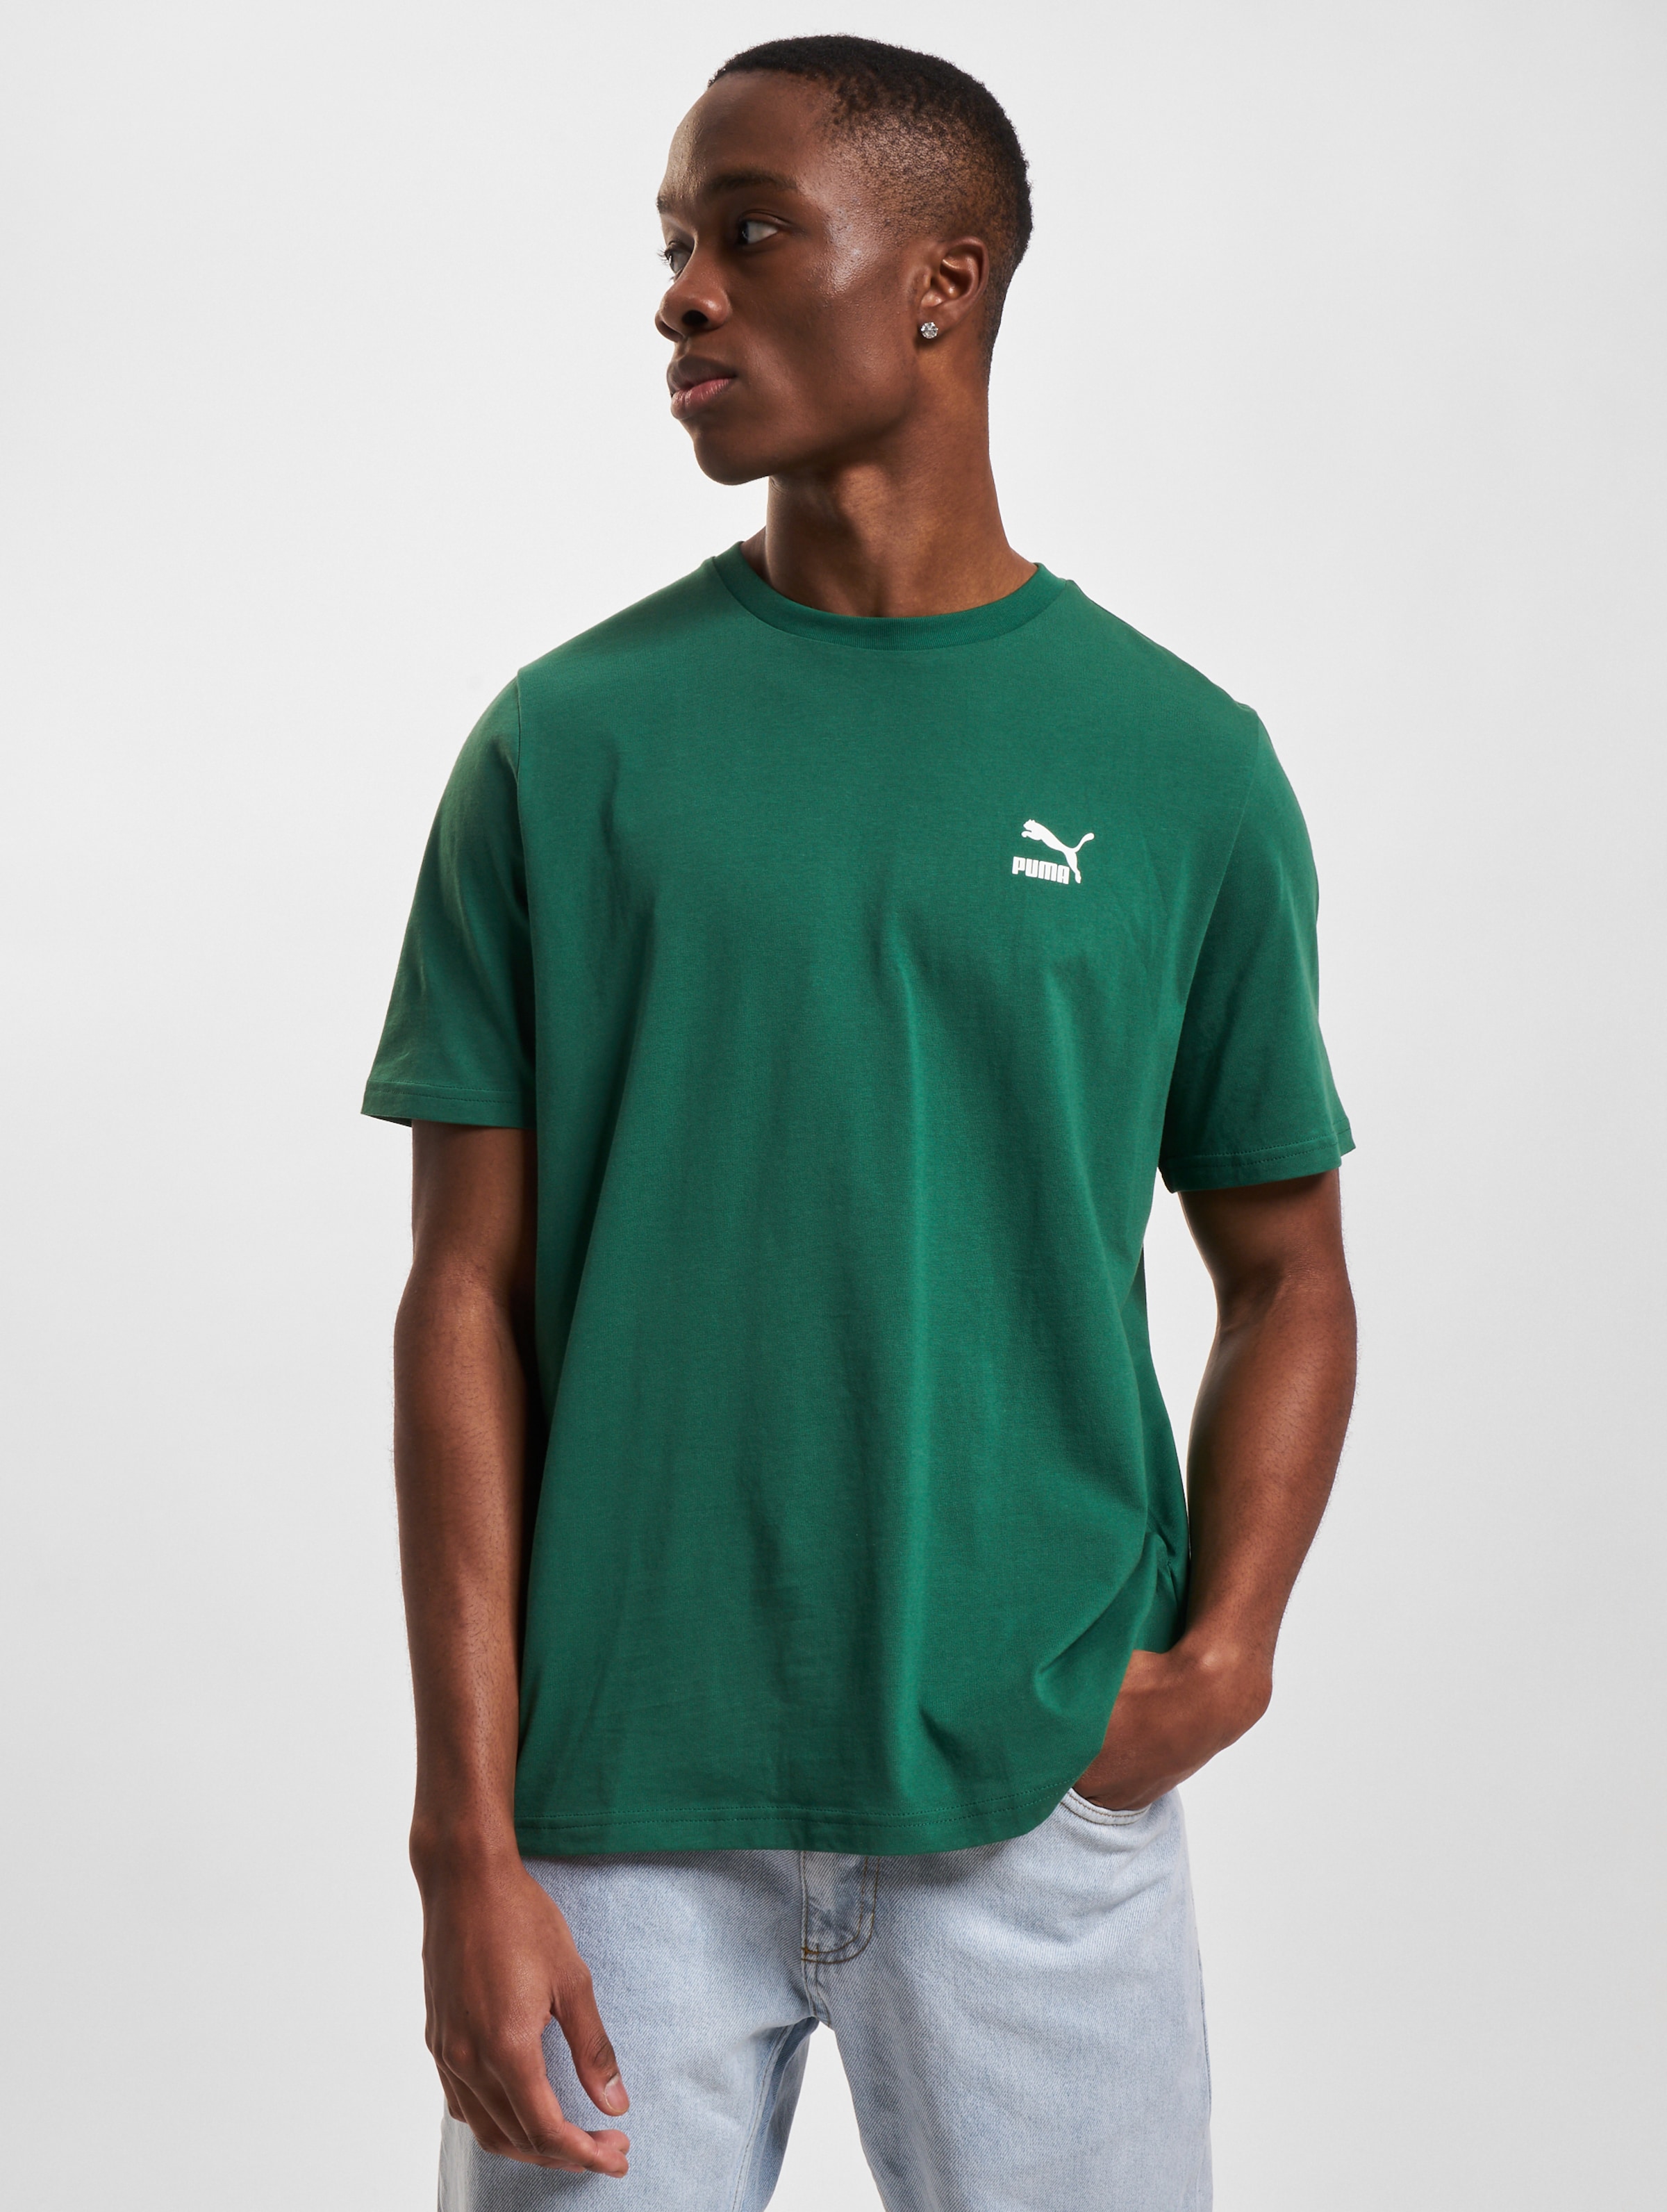 Discover more than 78 puma logo t shirt latest